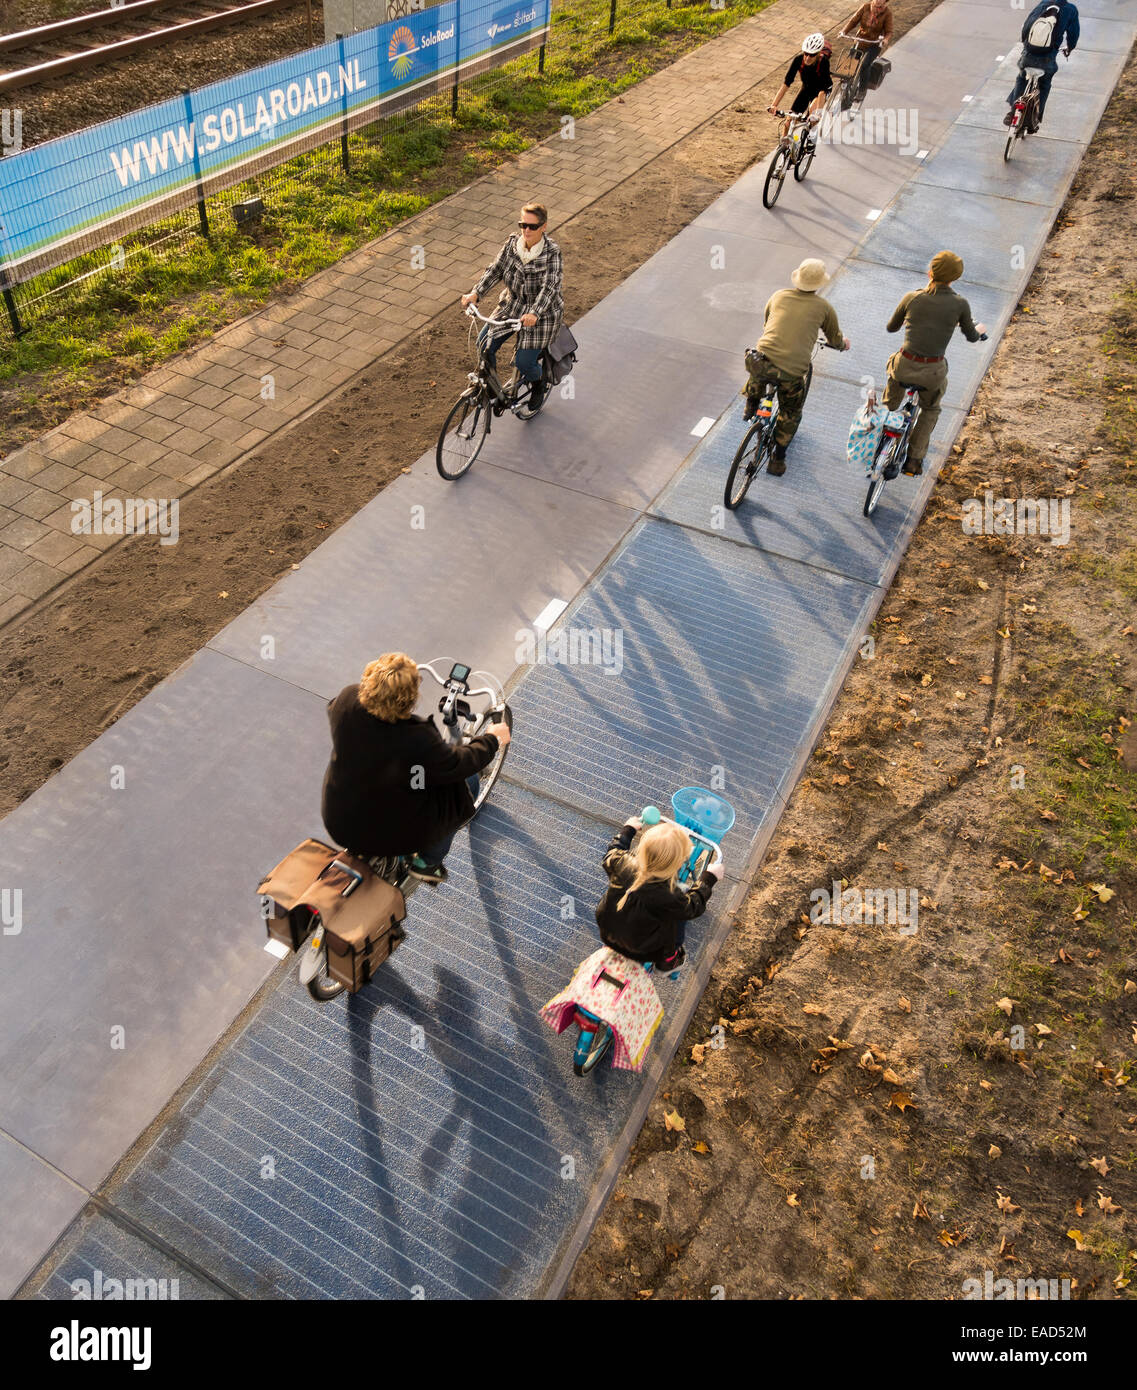 Krommenie, Pays-Bas. 12 novembre, 2014. Photo : 1er novembre 2014. Première voie cyclable faite à partir de cellules solaires avec les cyclistes sur piste cyclable. Au départ seulement 70 mètres (230 pieds). Octobre 2014 à Krommenie installé, à 25 km (15 miles) au nord d'Amsterdam. Fait à partir de dalles en béton de 2,5 par 3,5 mètres ( 6,5x10ft) avec une couche supérieure translucide de verre trempé, qui est d'environ 1cm d'épaisseur. Sous le verre sont des cellules solaires en silicium cristallin. Le tronçon initial est capable de produire suffisamment d'énergie pour alimenter trois maisons. Credit : Wiskerke/Alamy Live News Banque D'Images